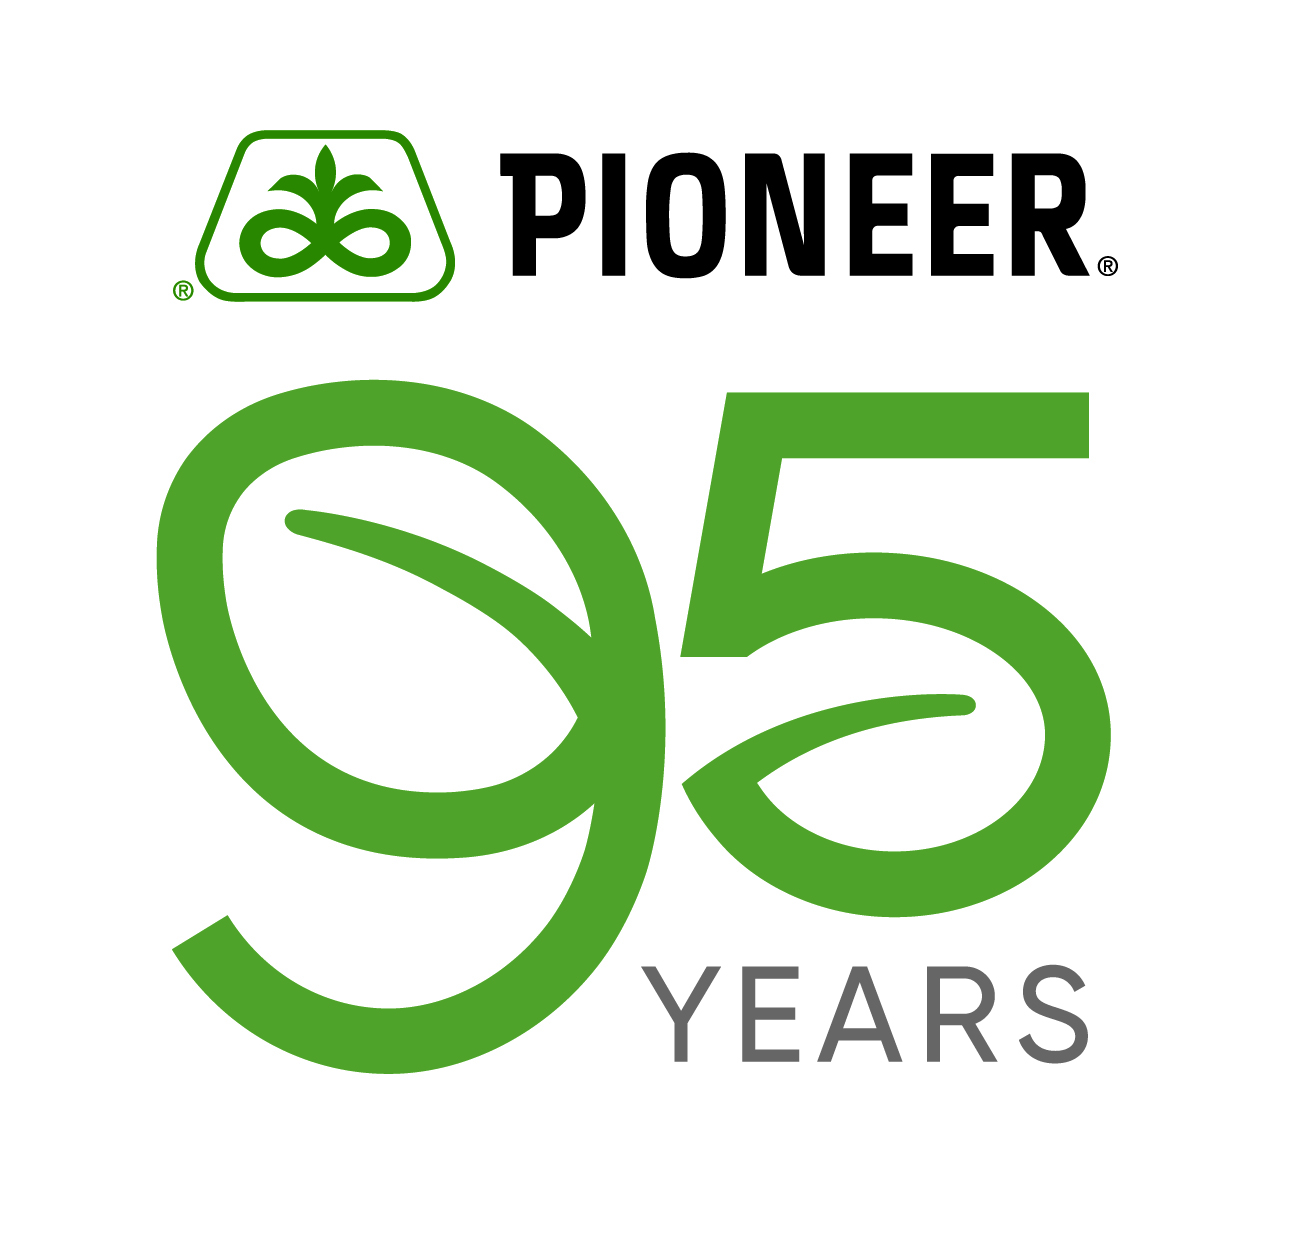 21D 1002 Pioneer 95 Years logo Pioneer Logo cmyk color